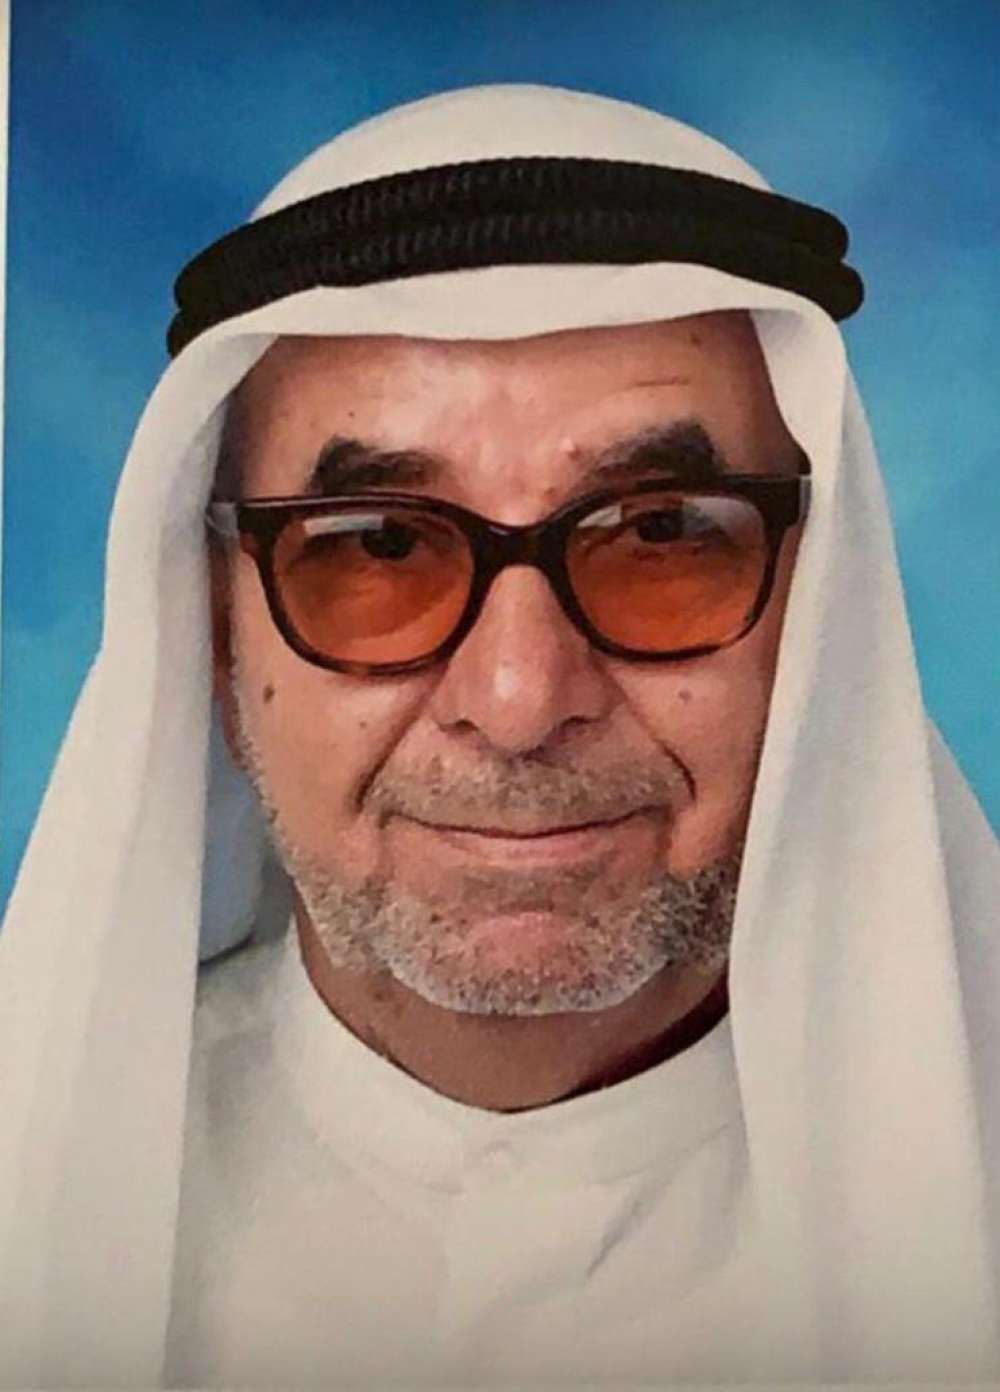 المرحوم خادم الحسين الحاج درويش صالح درويش